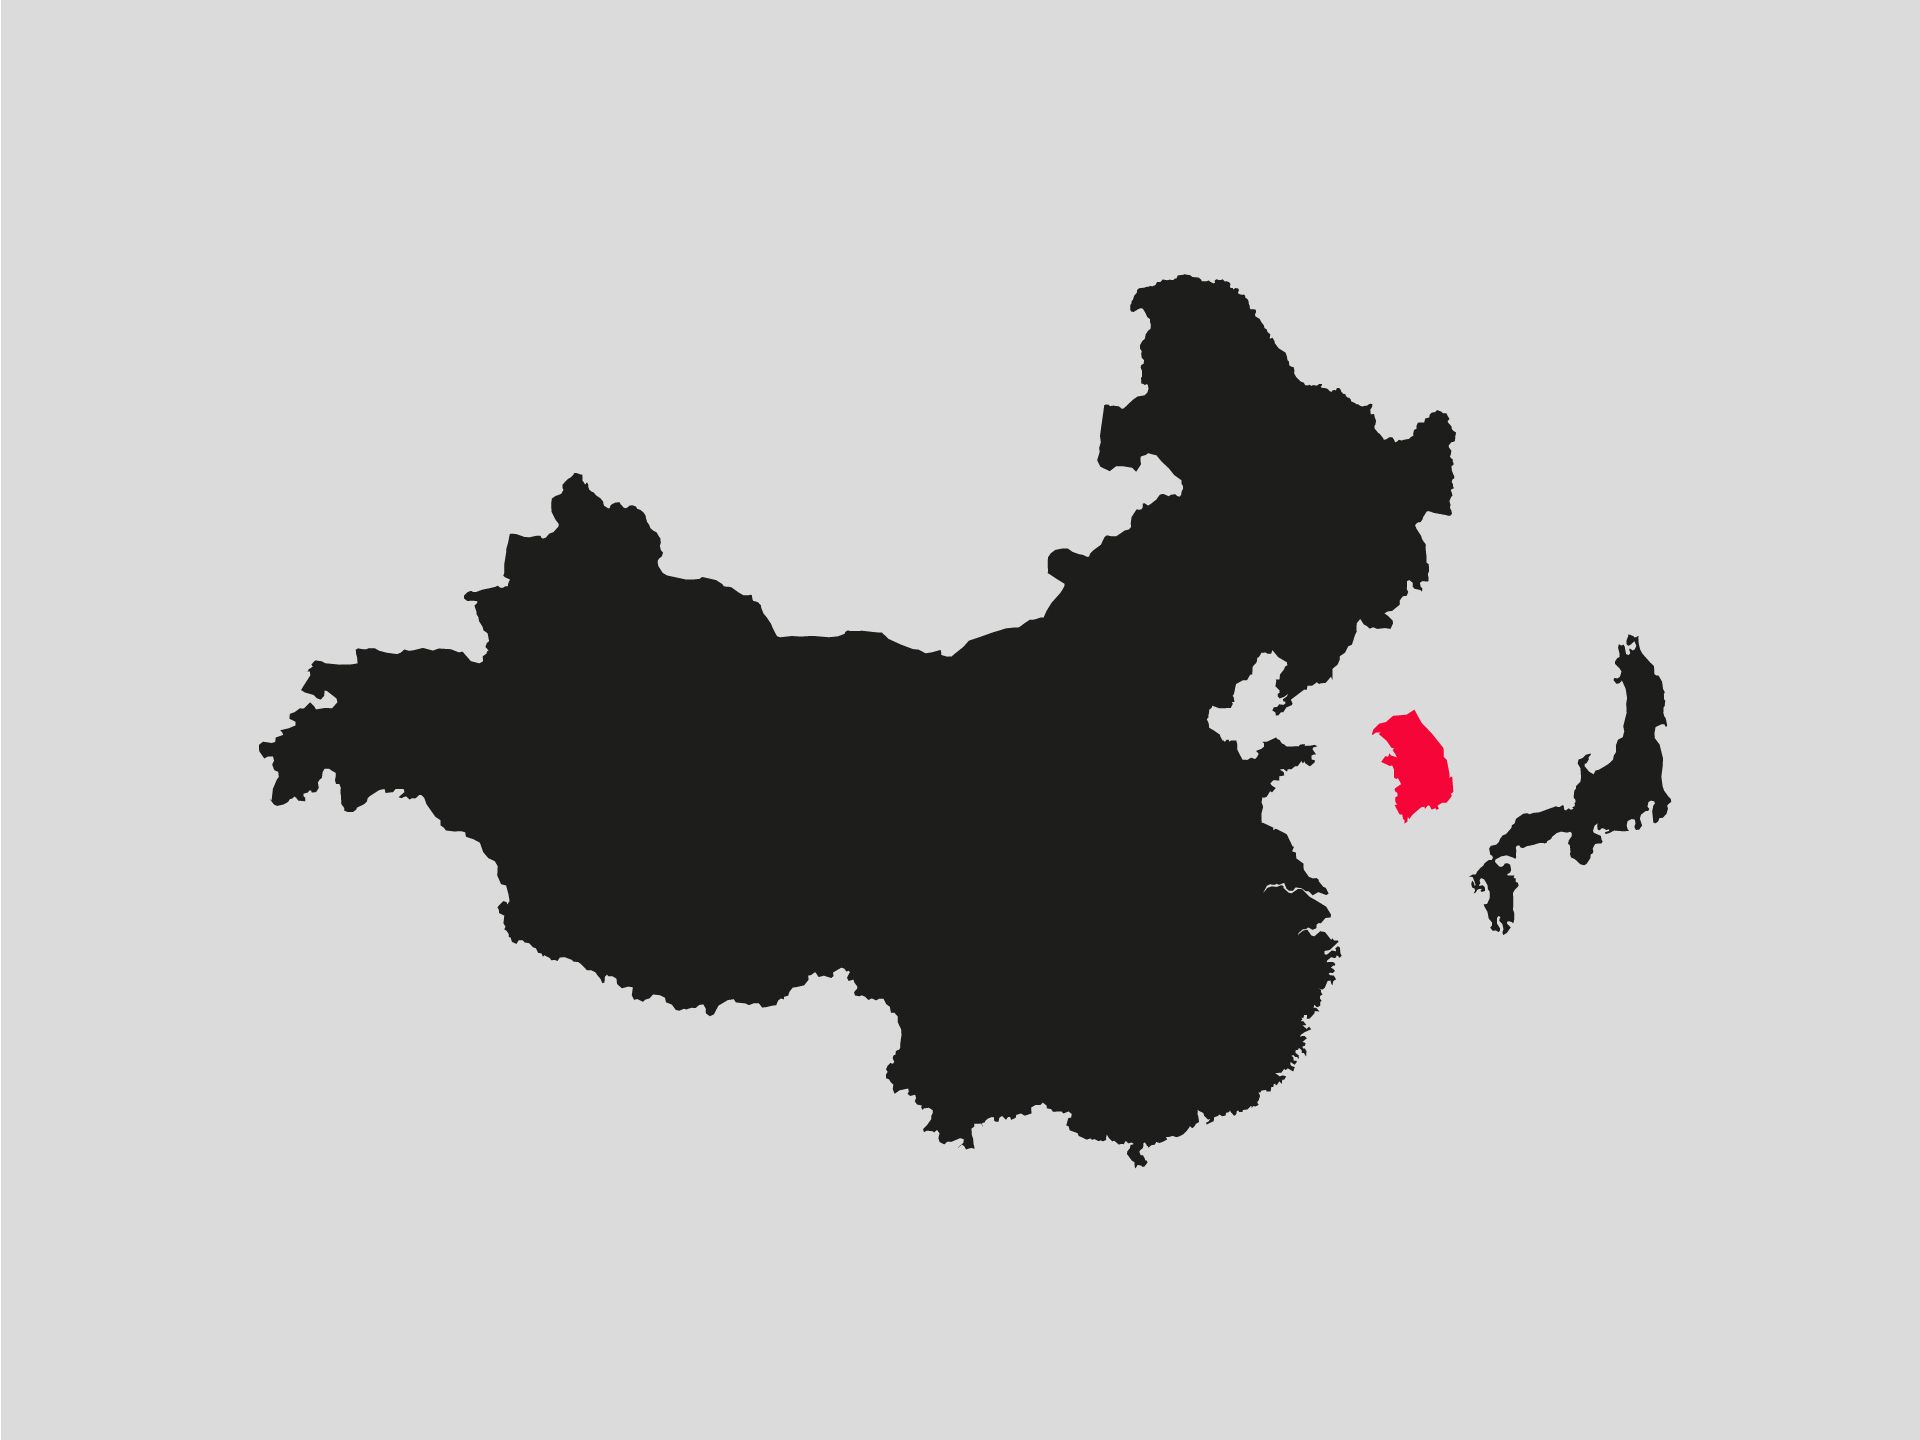 Auf dem Bild sind die Umrisse von China, Südkorea und Japan zu sehen. Südkorea ist farblich hervorgehoben.